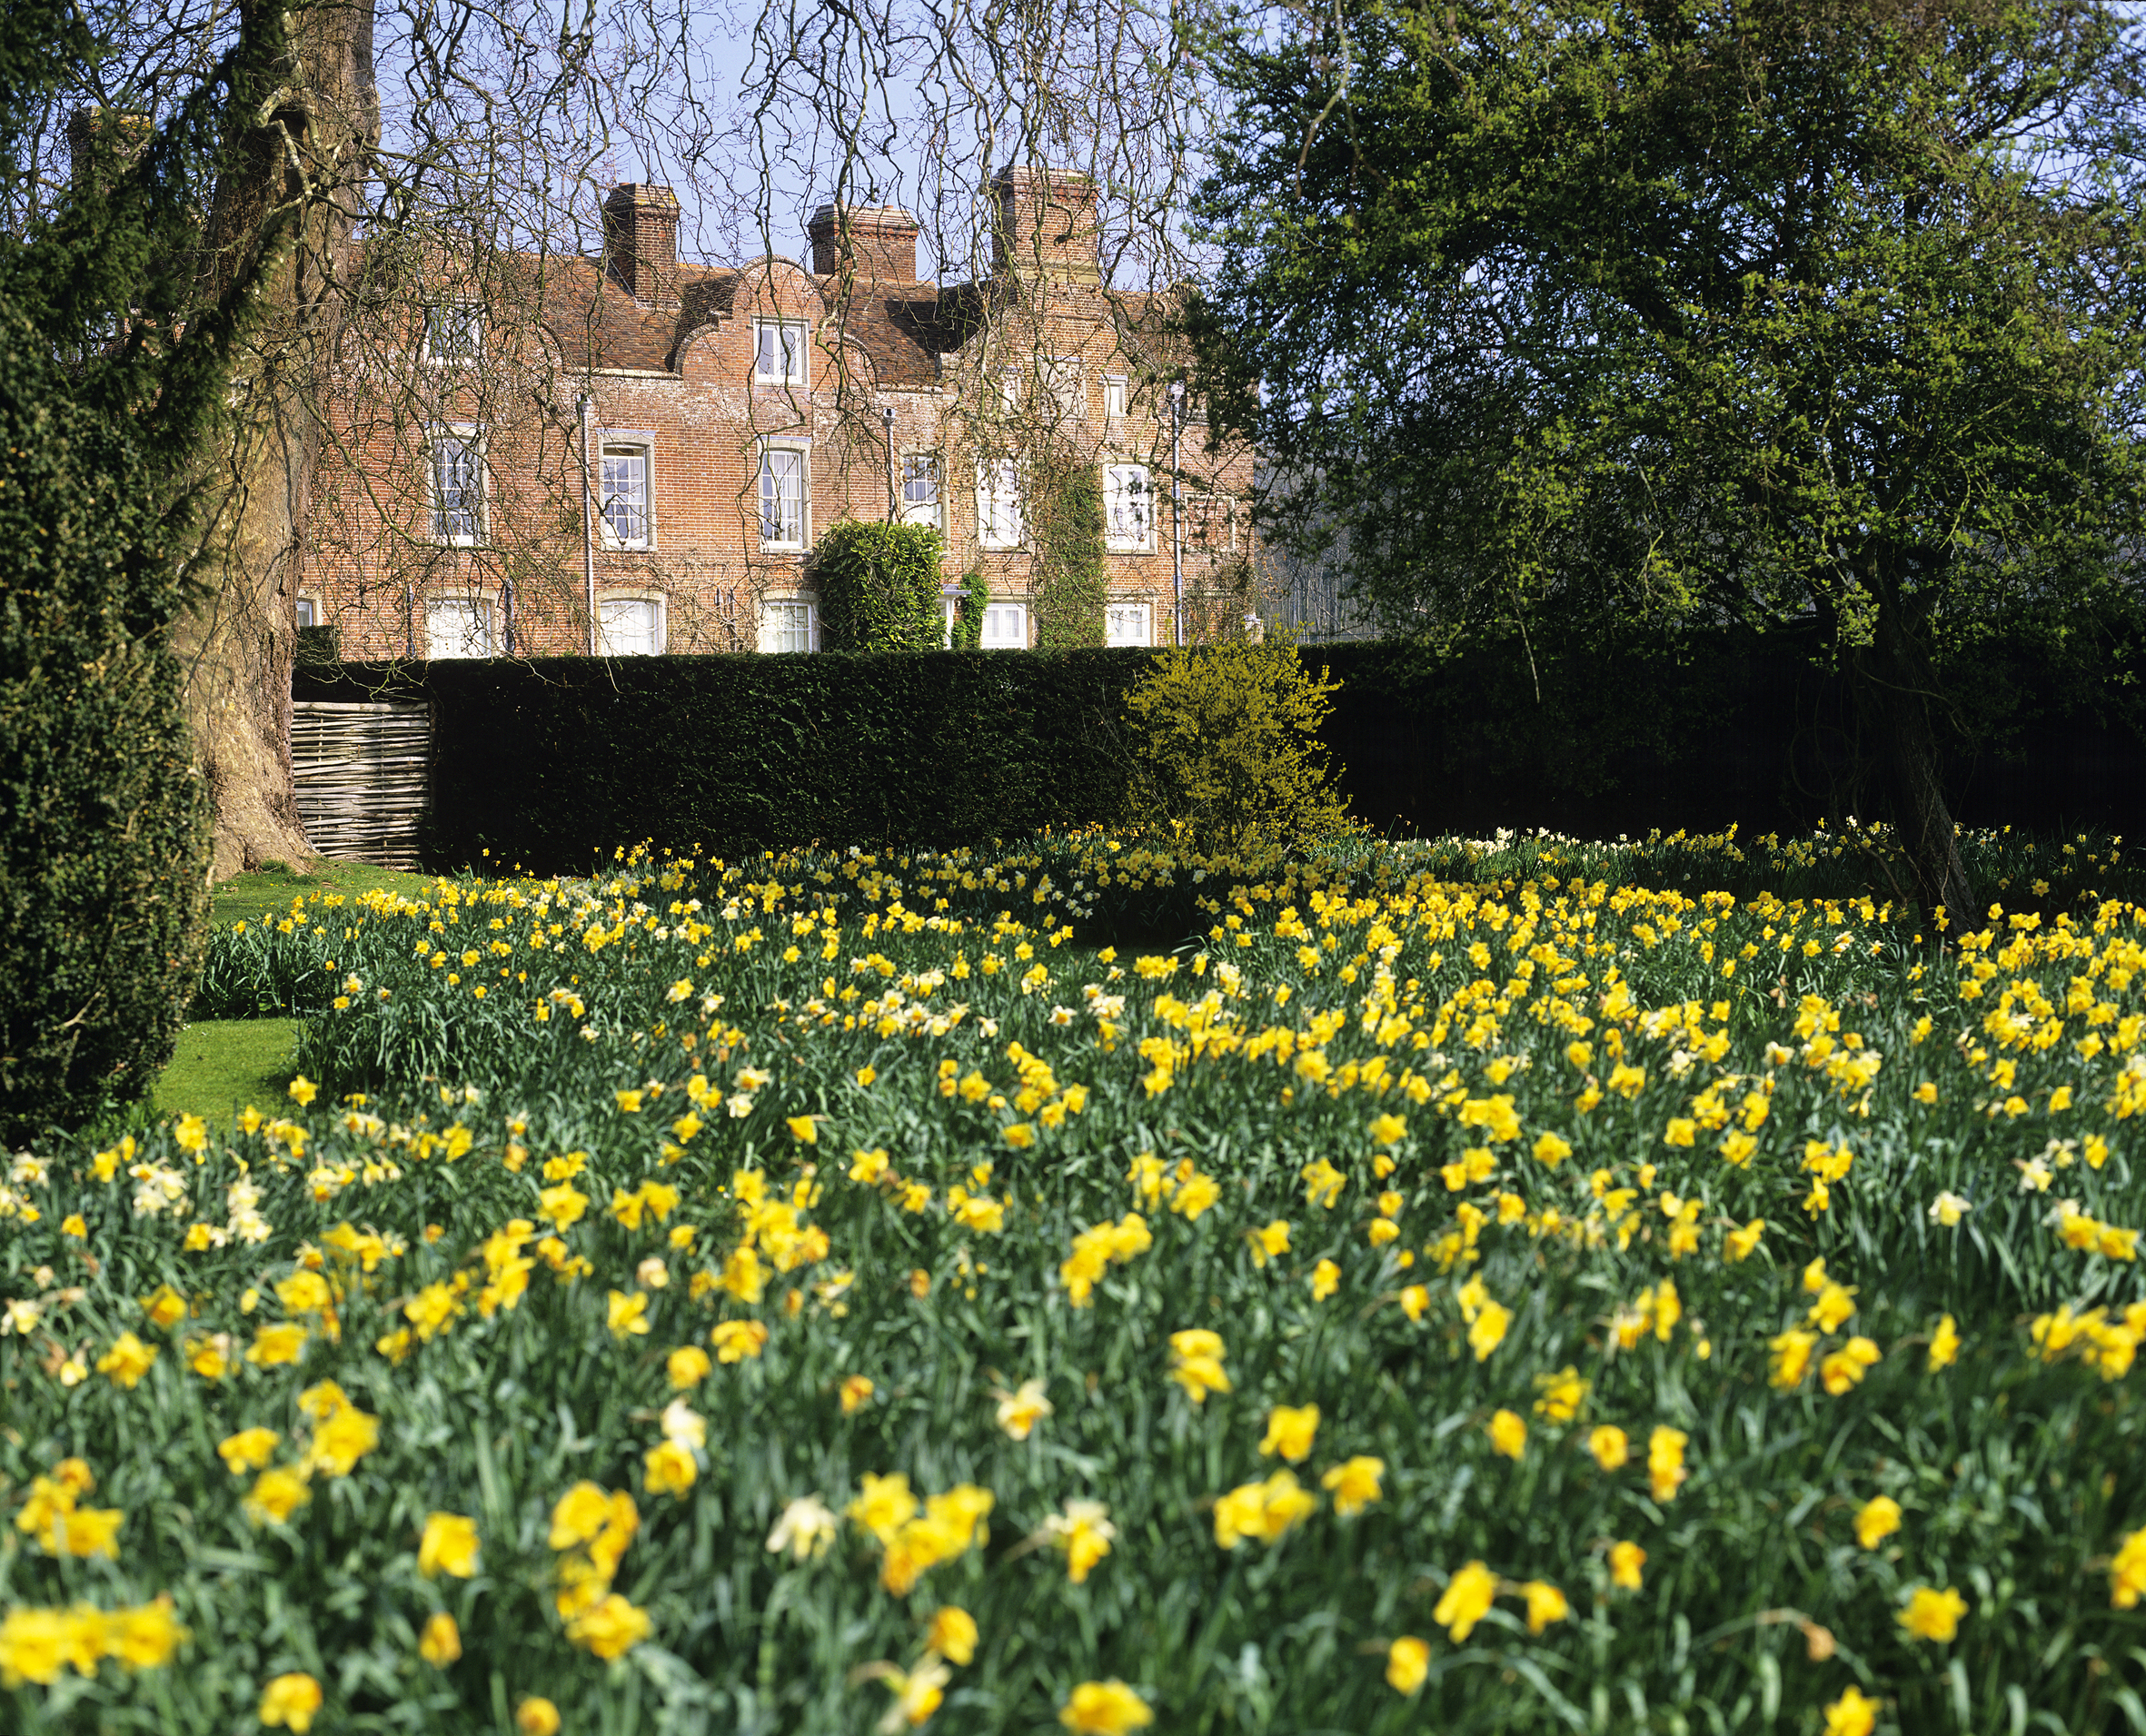 Daffodil meadow